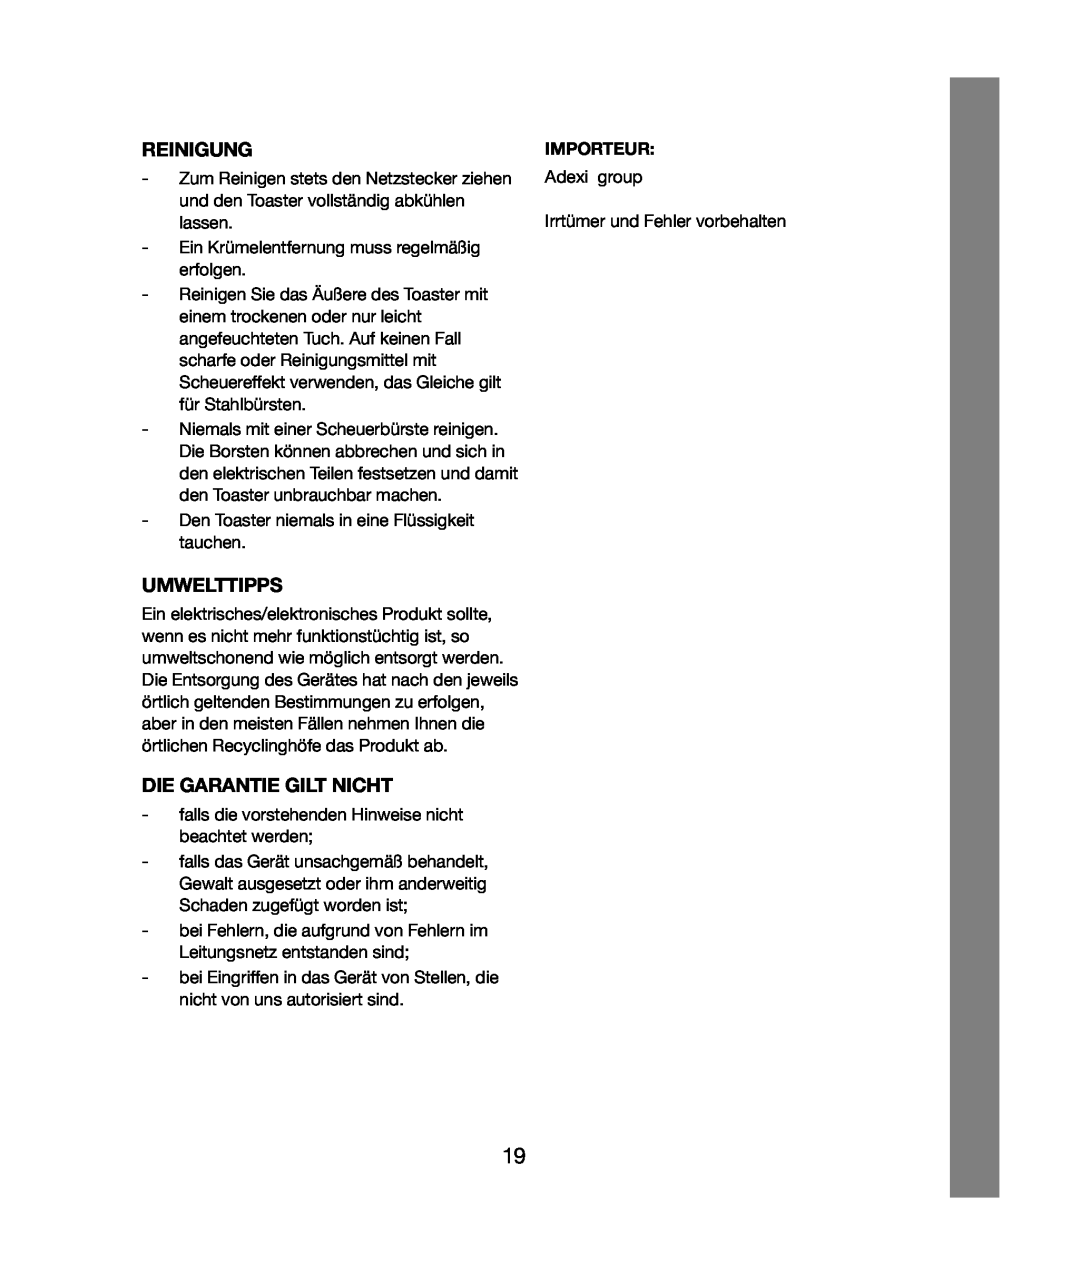 Melissa 243-020 manual Reinigung, Umwelttipps, Die Garantie Gilt Nicht, Importeur 